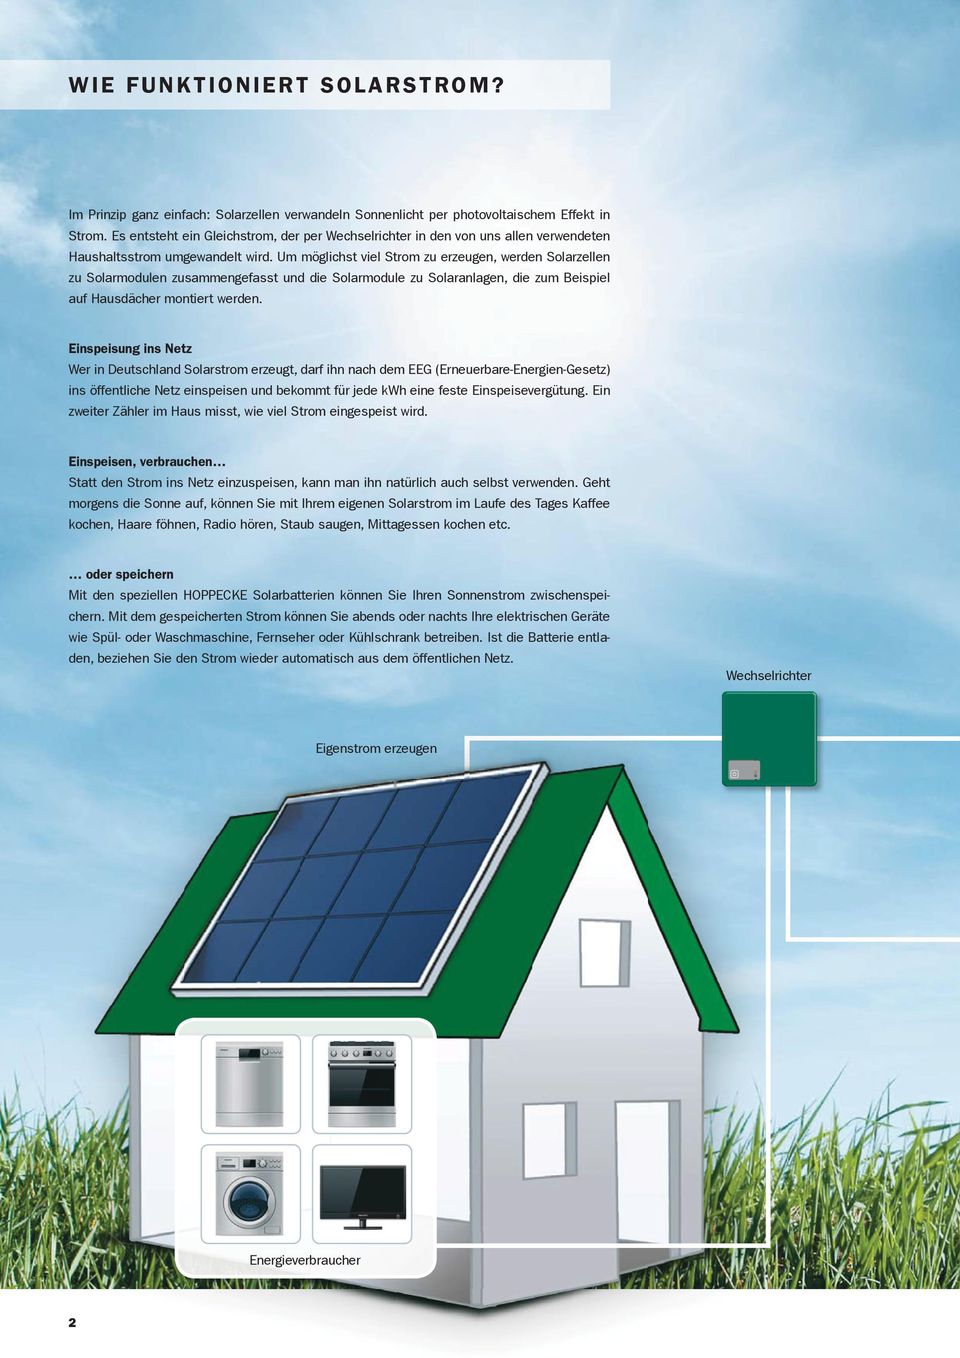 Um möglichst viel Strom zu erzeugen, werden Solarzellen zu Solarmodulen zusammengefasst und die Solarmodule zu Solaranlagen, die zum Beispiel auf Hausdächer montiert werden.